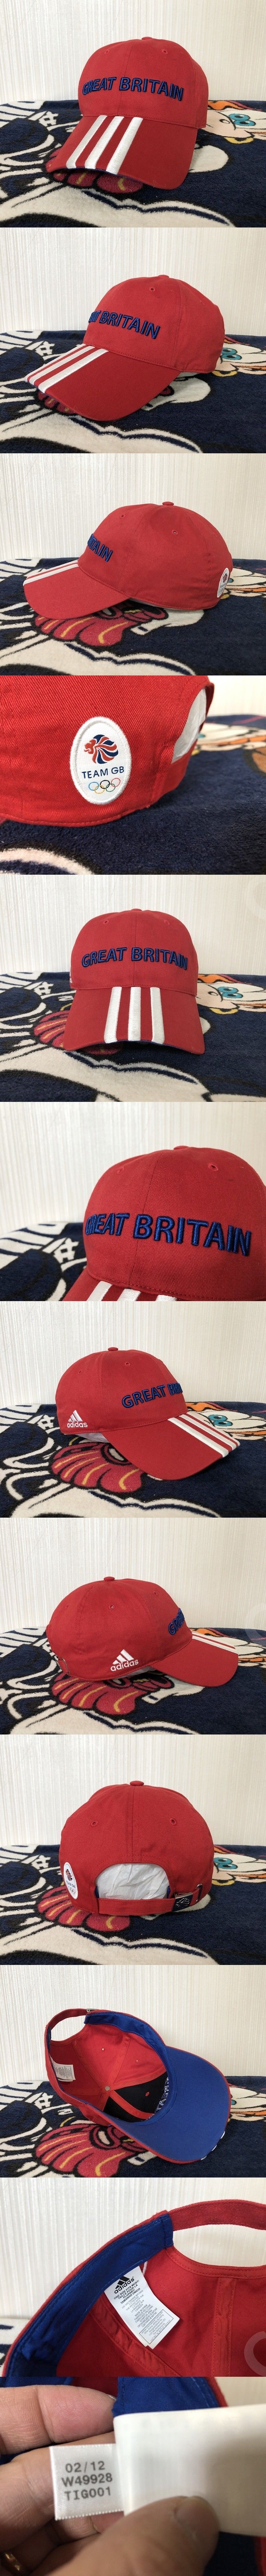 아디다스 2012 런던올림픽 팀GB/영국국대 모자/볼캡